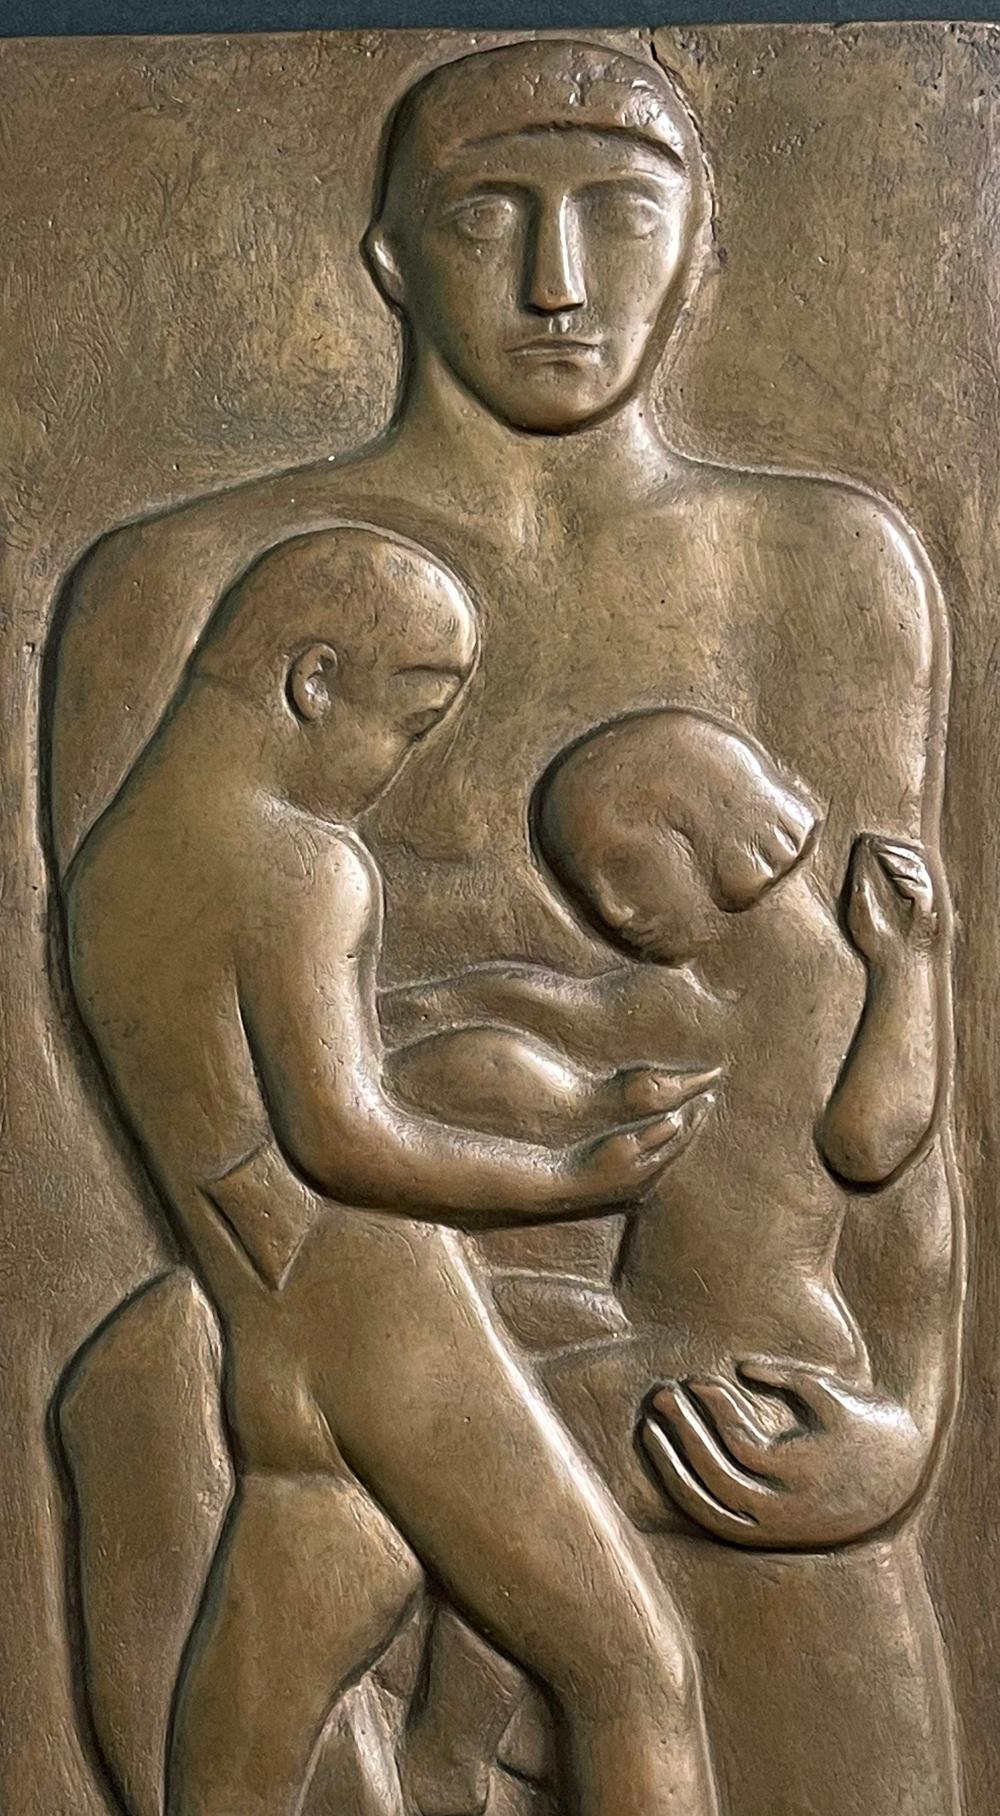 Diese Relieftafel von William Zorach, die in Bronze mit einer warmen, tiefbraunen Patina ausgeführt ist, zeigt einen Vater, der dem Betrachter direkt gegenübersteht und seinen Sohn und seine Tochter umarmt, die beide in die Pflege eines